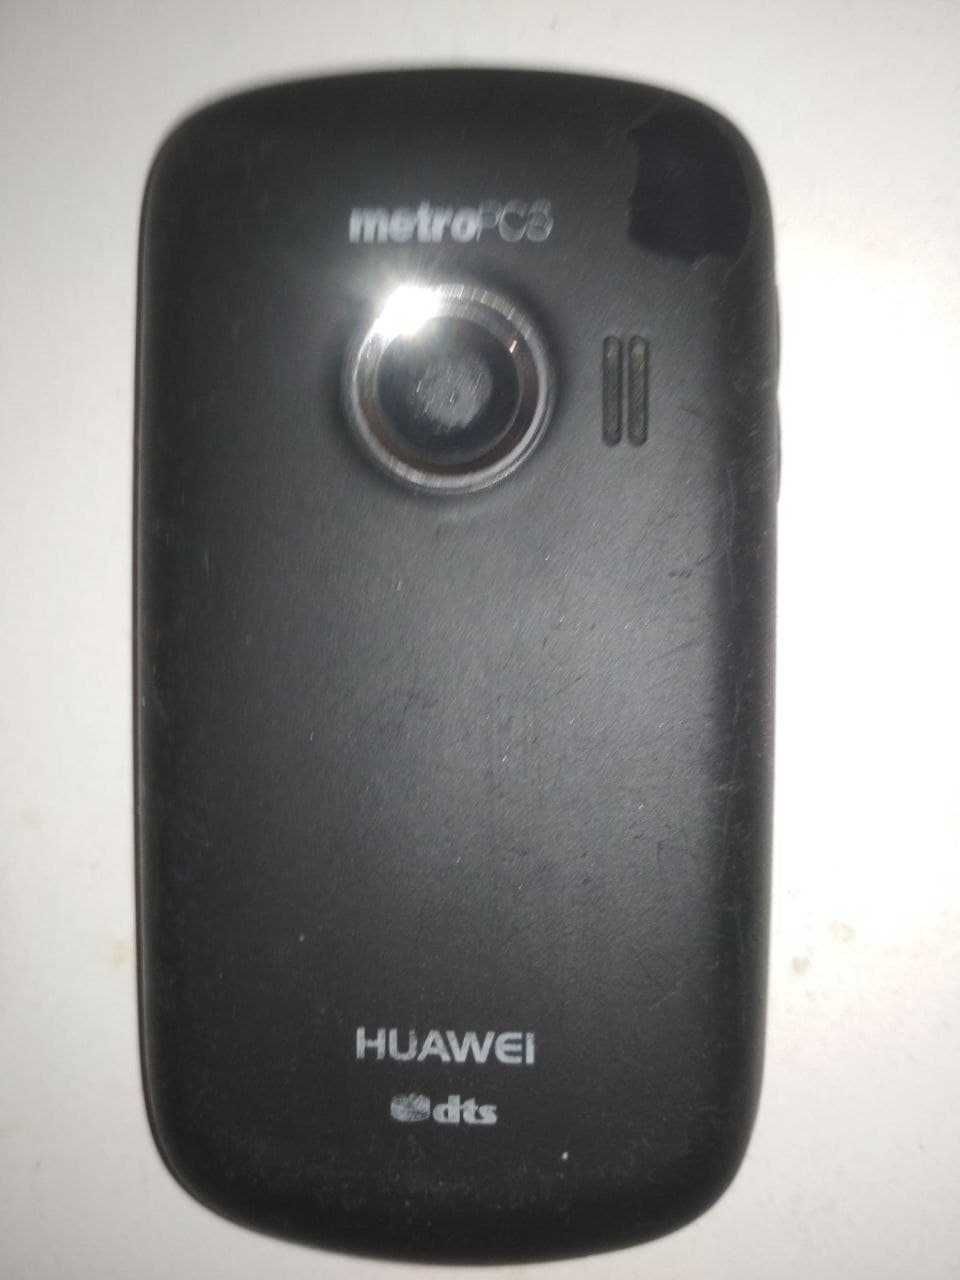 Huawei M835 (CDMA)